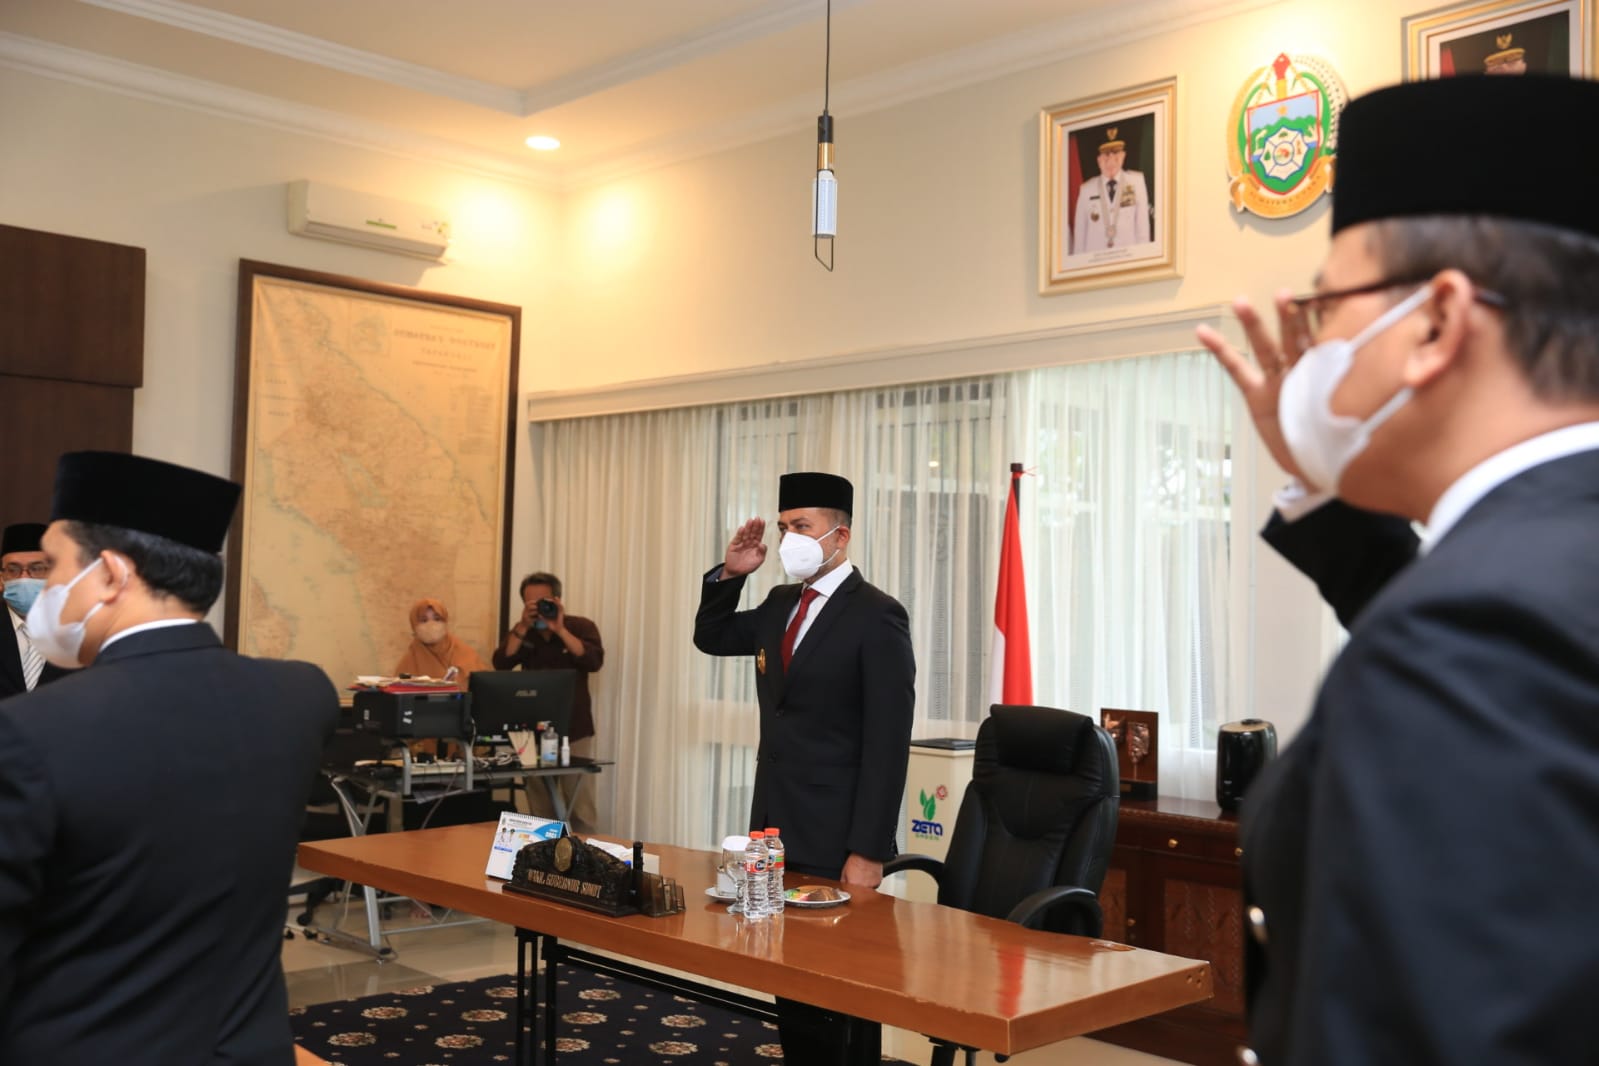 Wakil Gubernur (Wagub) Sumatera Utara (Sumut) Musa Rajekshah mengikuti Upacara Nasional Hari Kesaktian Pancasila Tahun 2021 di Monumen Pancasila Sakti Jakarta, secara virtual dari Rumah Dinas Wagub Sumut, Jumat (1/10).